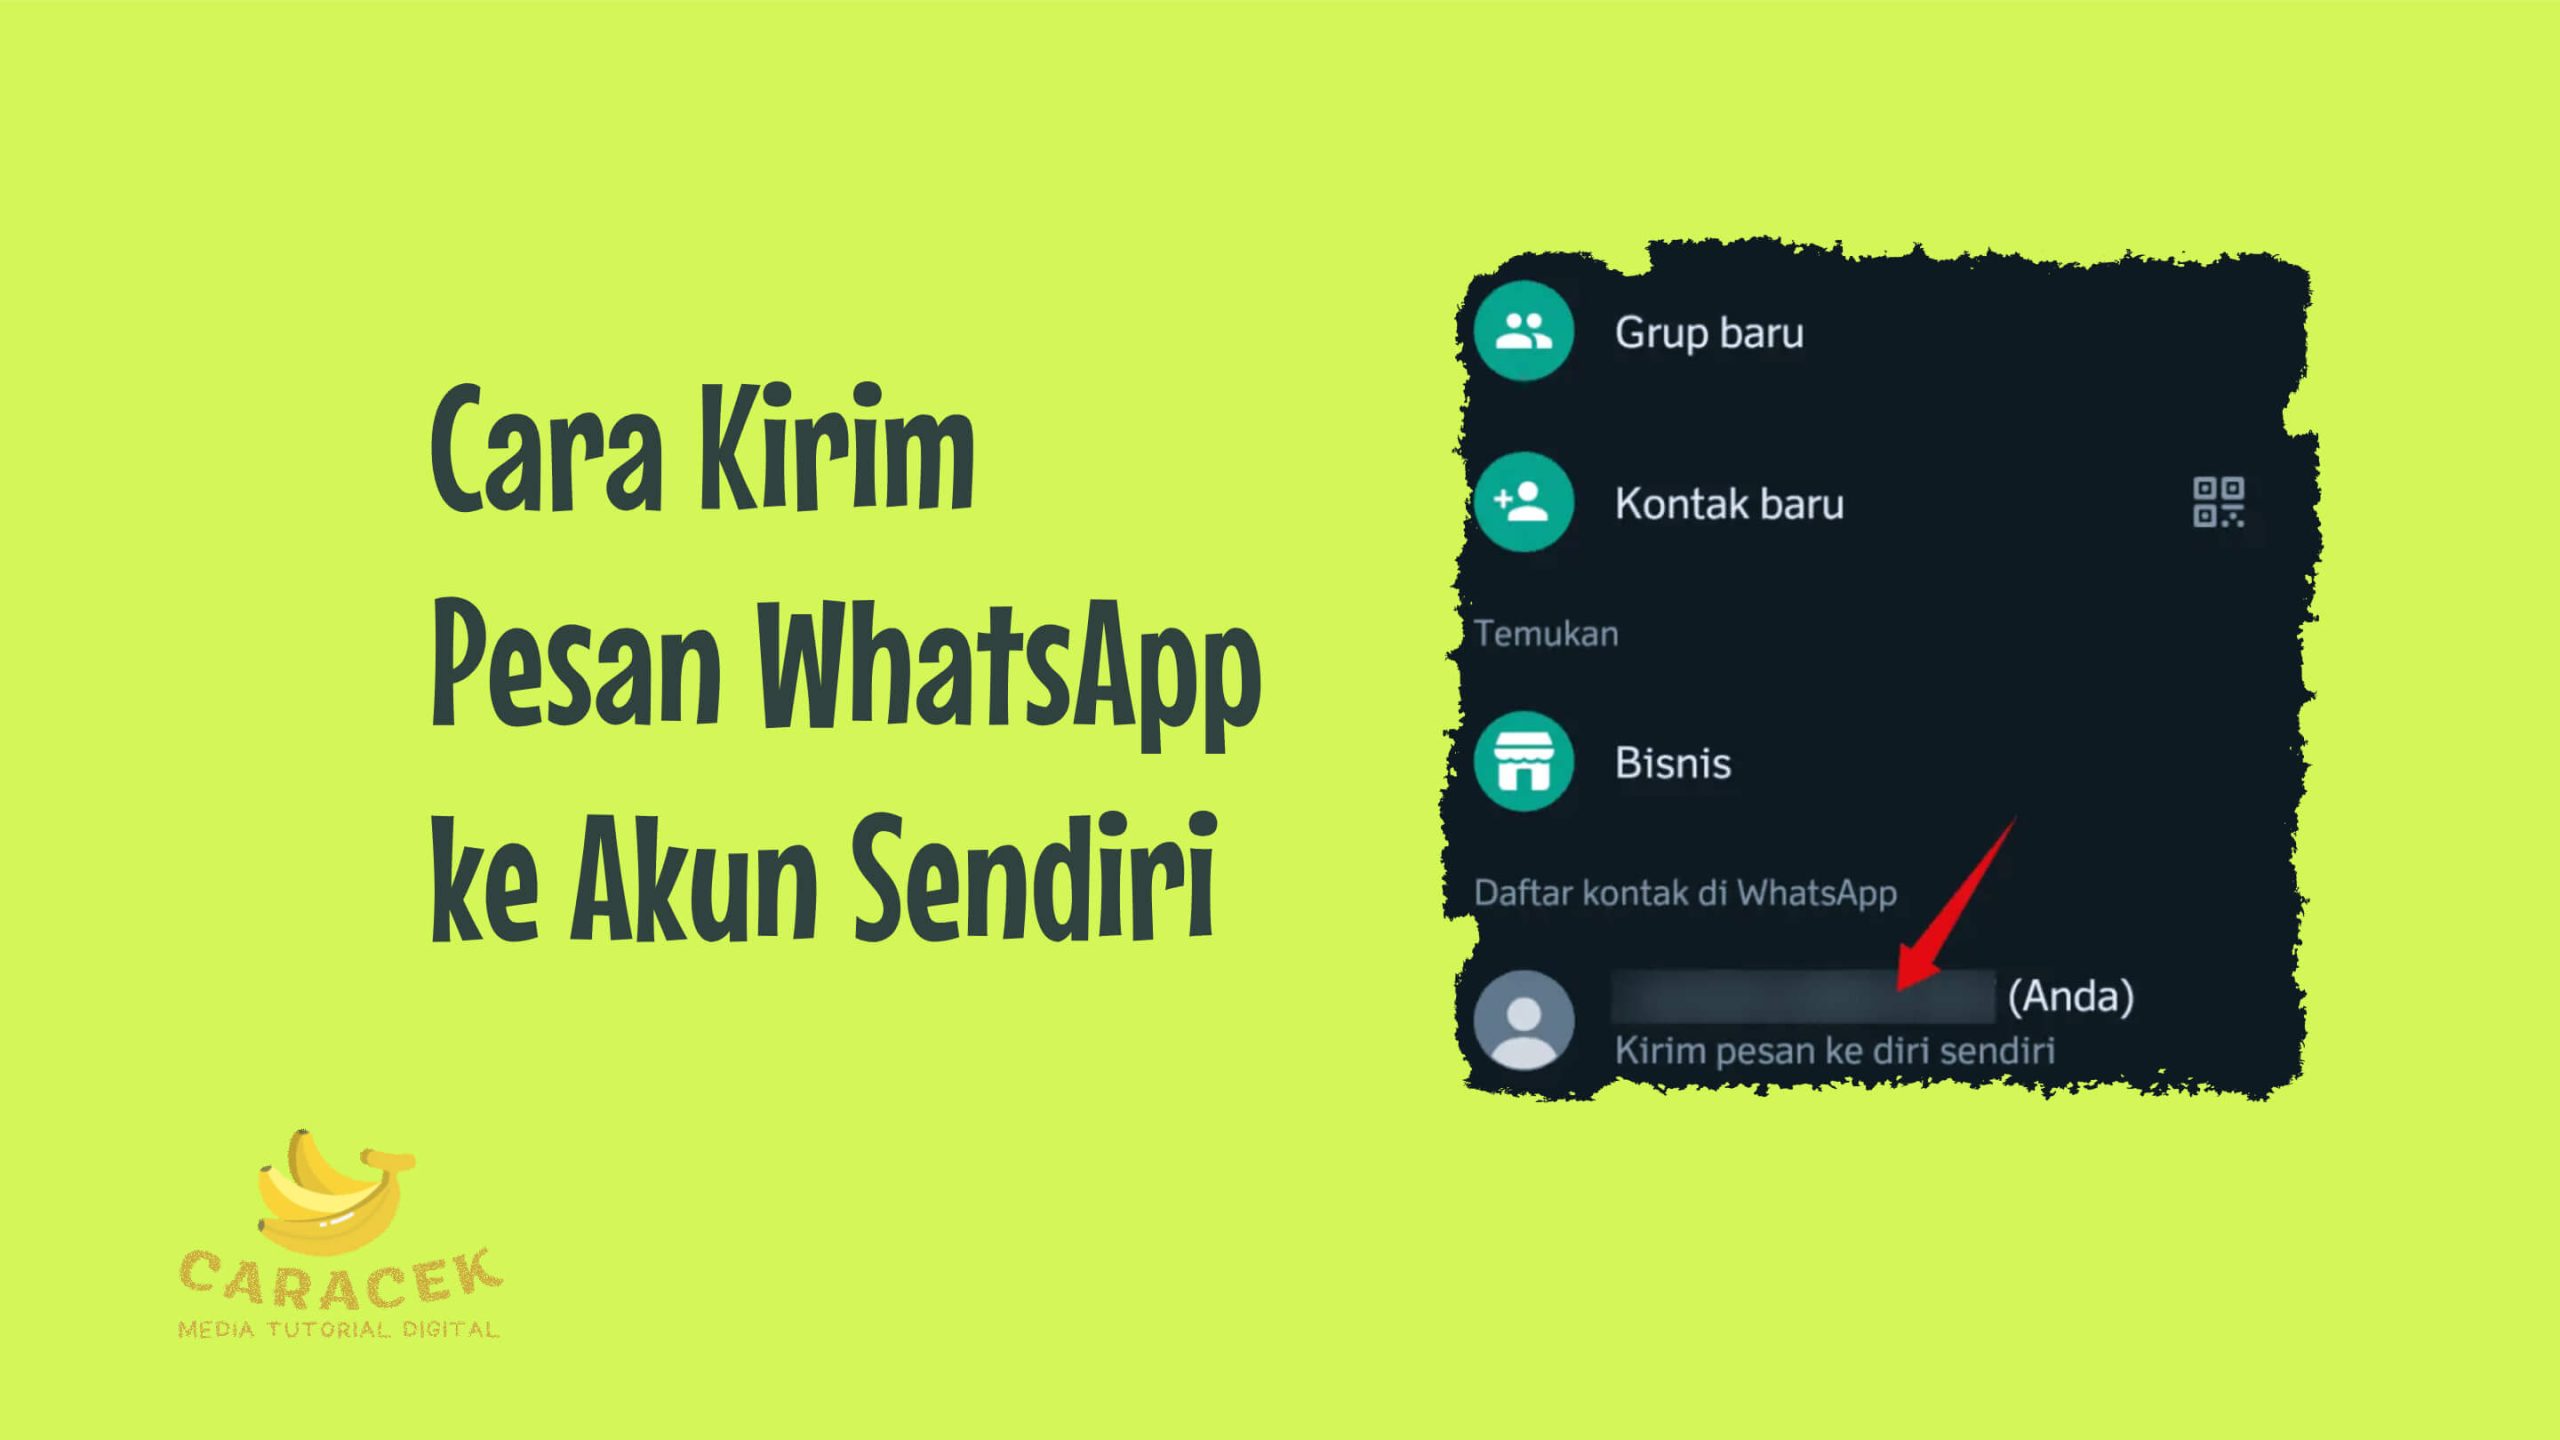 Cara Kirim Pesan WhatsApp ke Akun Sendiri